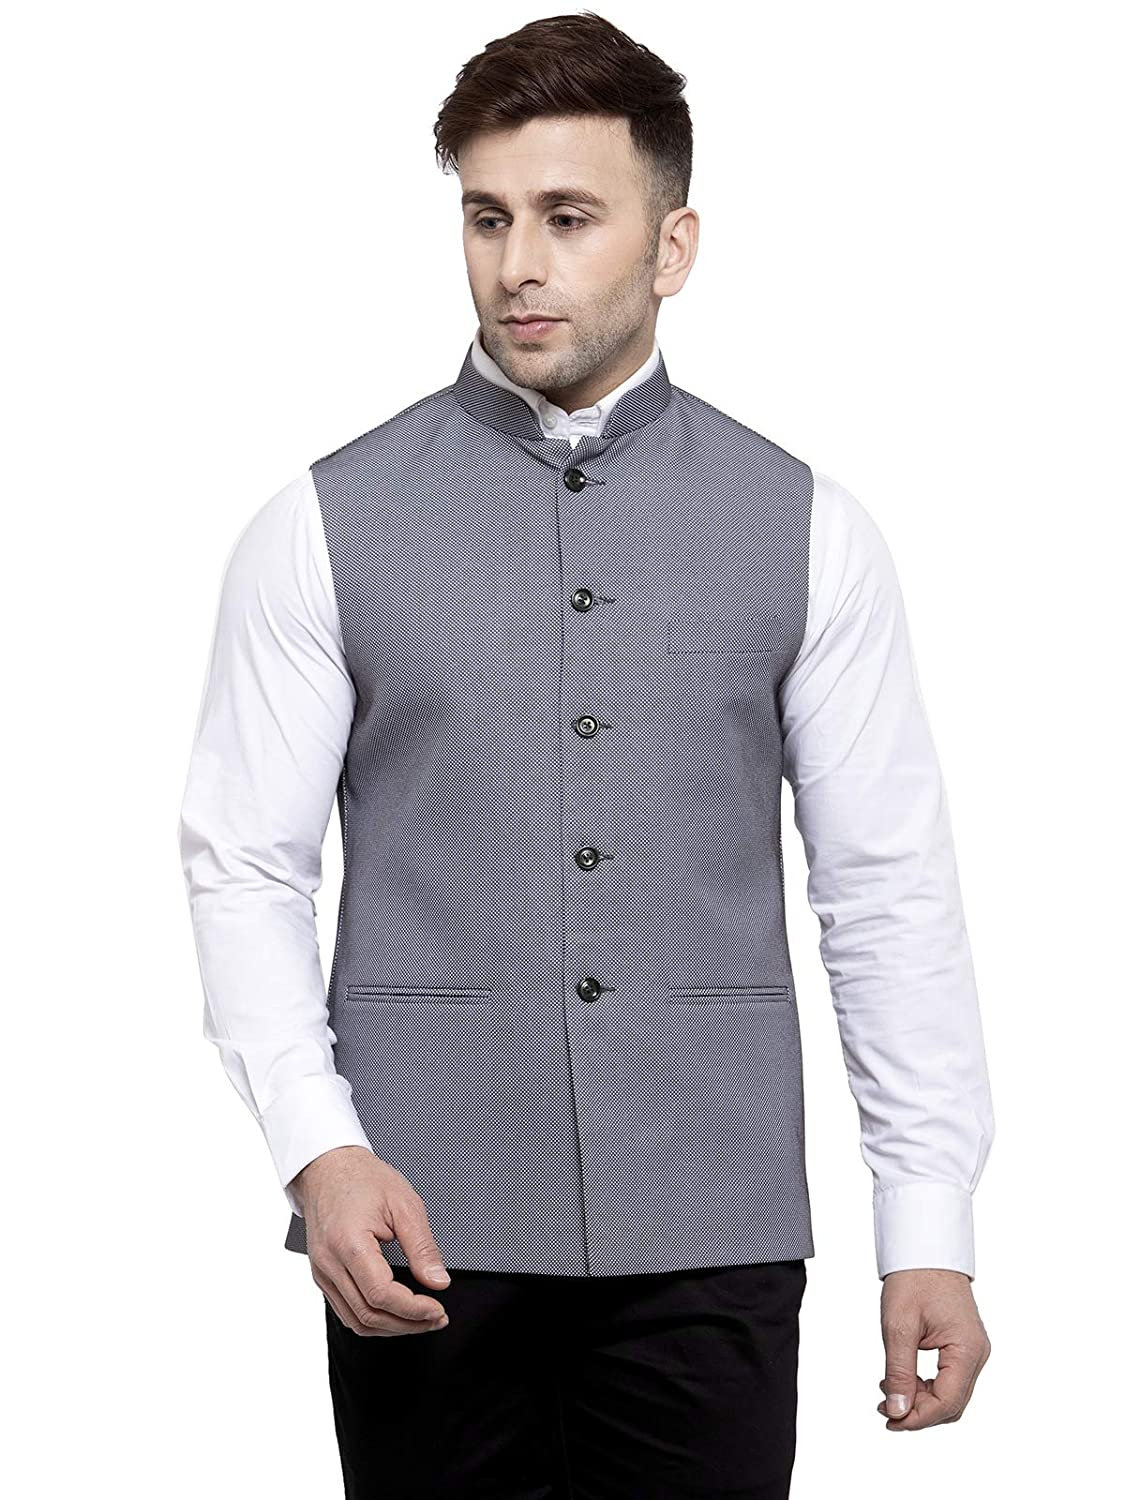 Sherwani for Men Stylish Formal Set of Waist Coat Shirt and - Etsy